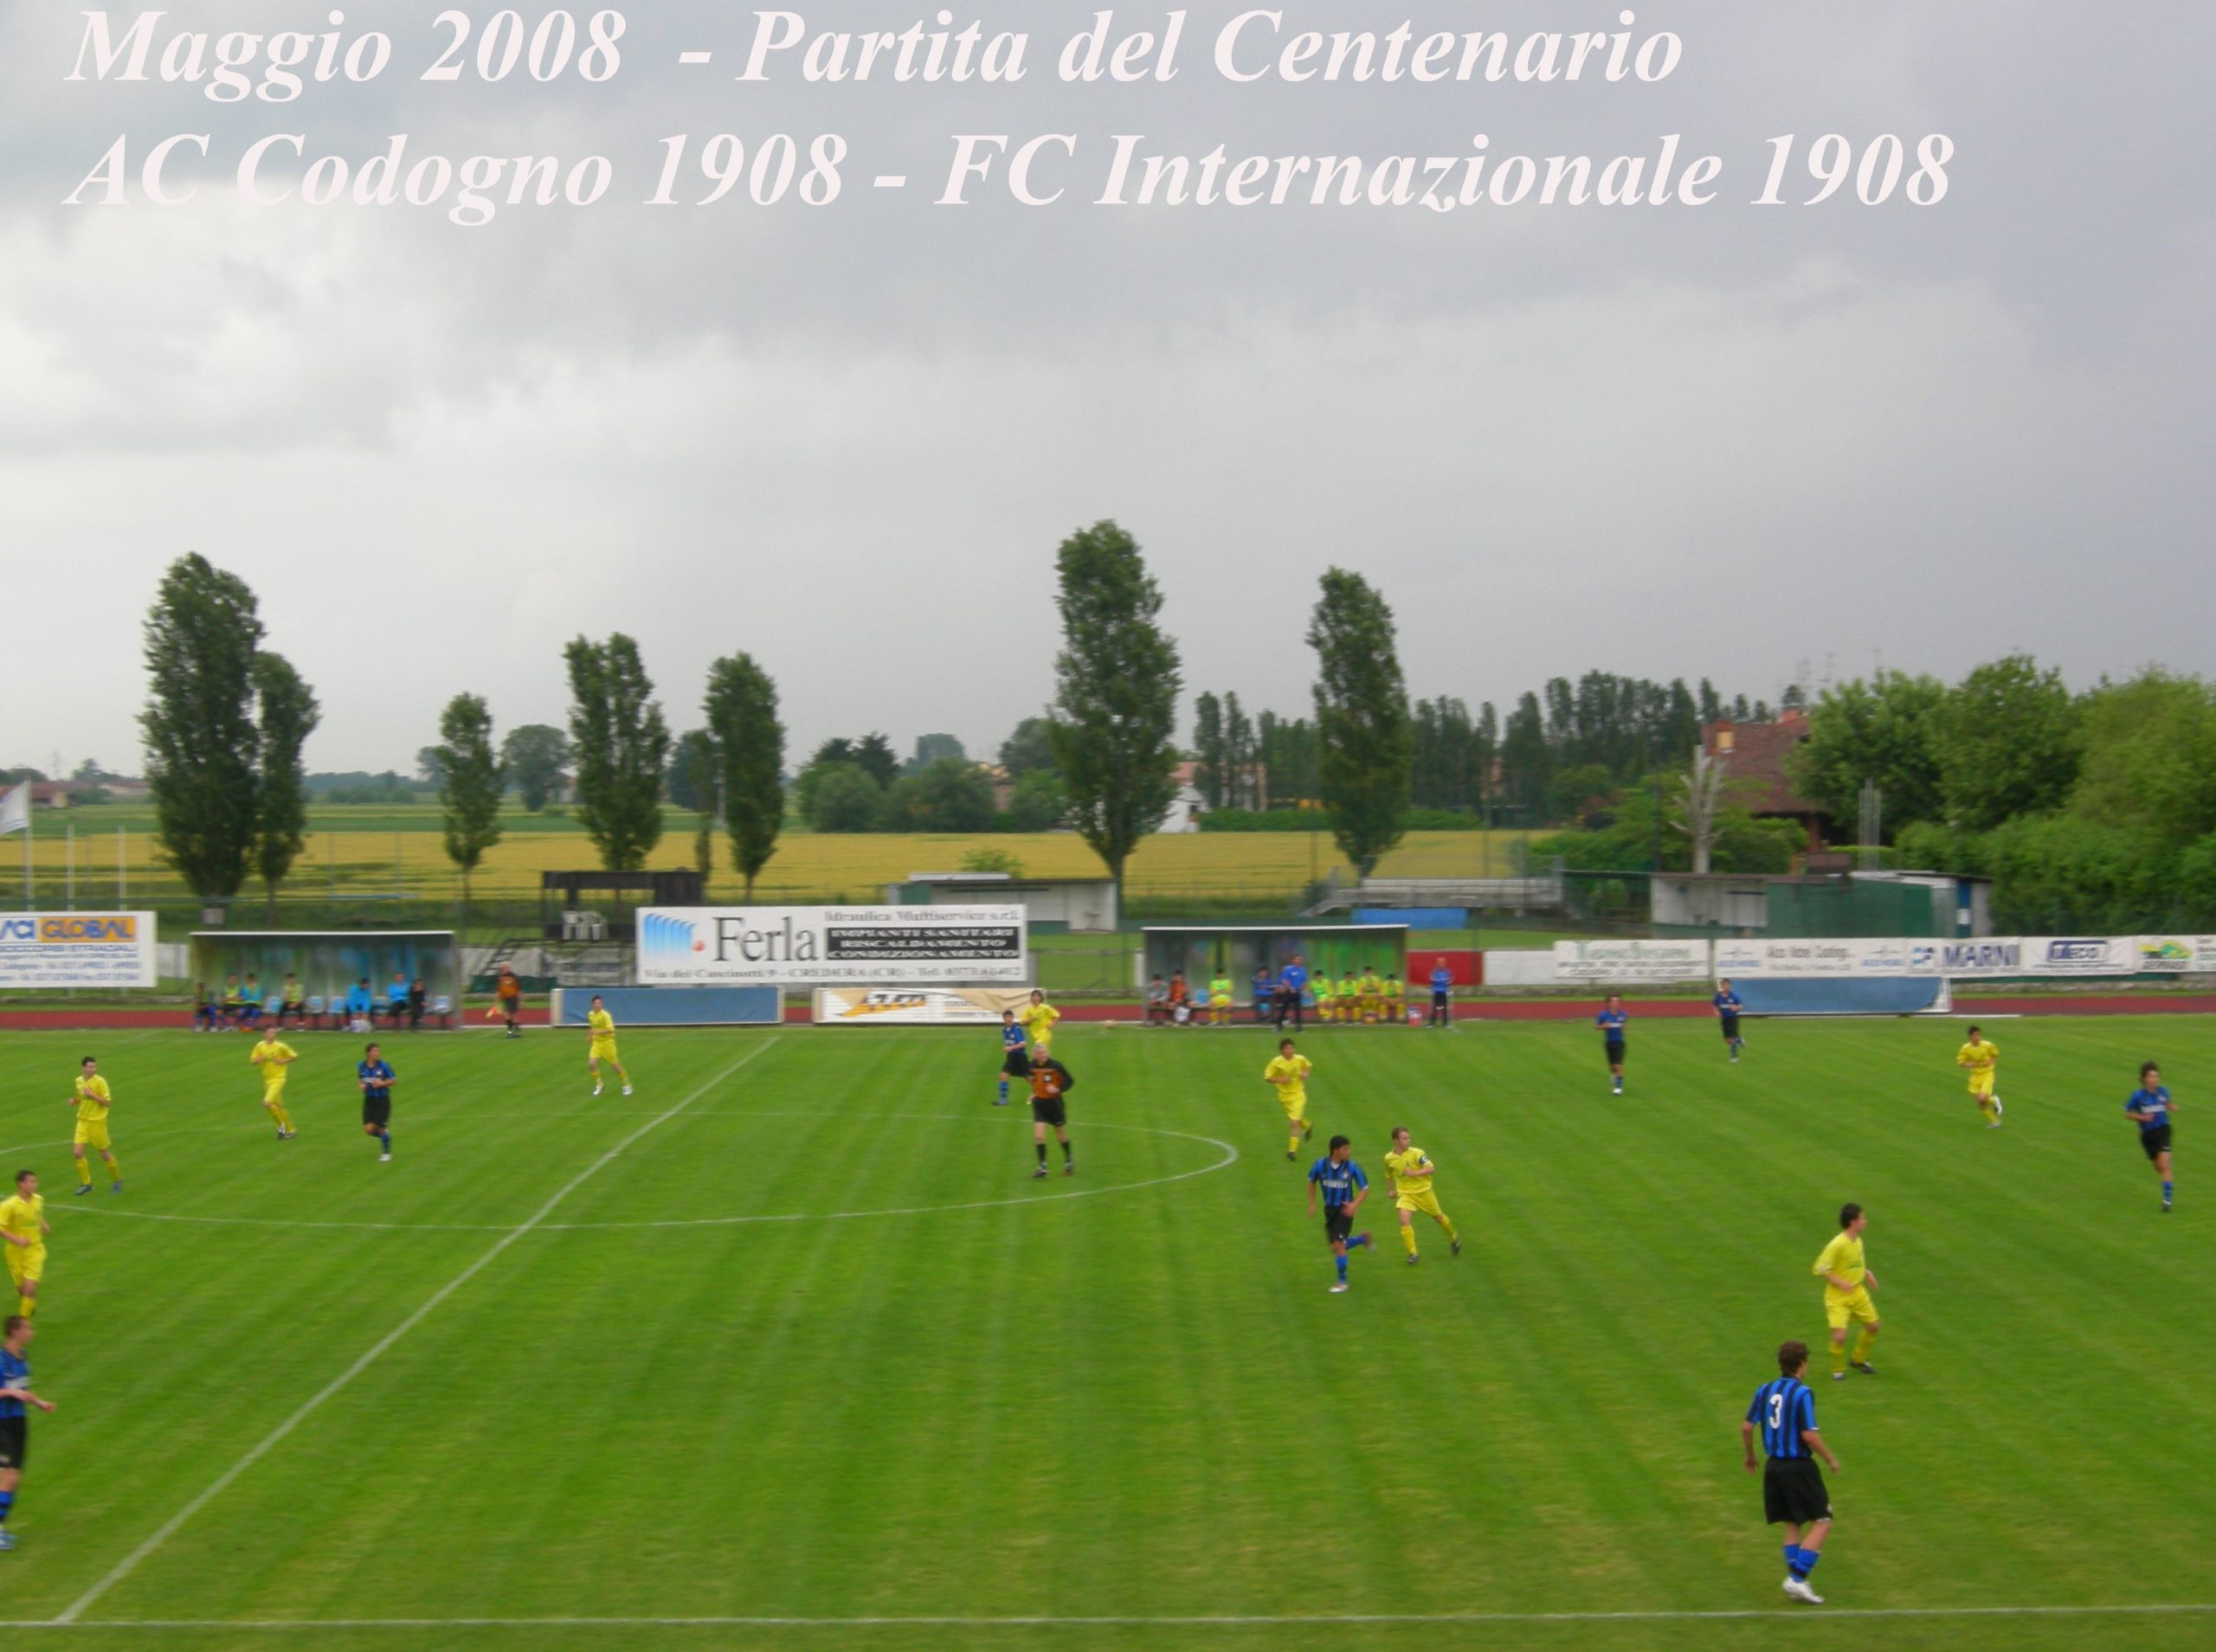 Partita del Centenario AC Codogno 1908 vs FC Inter 1908